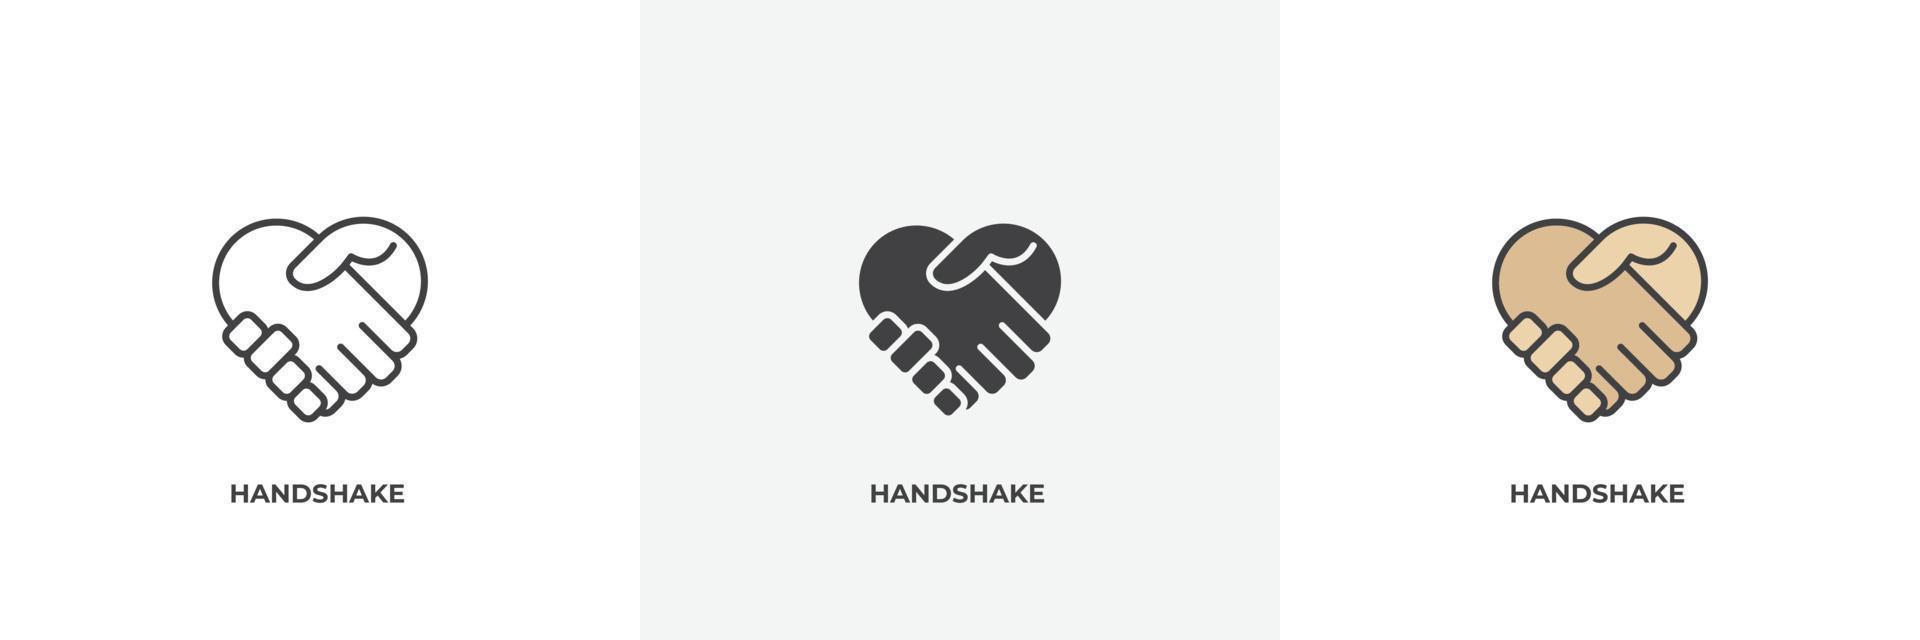 Handshake-Symbol. Linie, solider und gefüllter Umriss bunte Version, Umriss und gefülltes Vektorzeichen. ideensymbol, logoillustration. Vektorgrafiken vektor